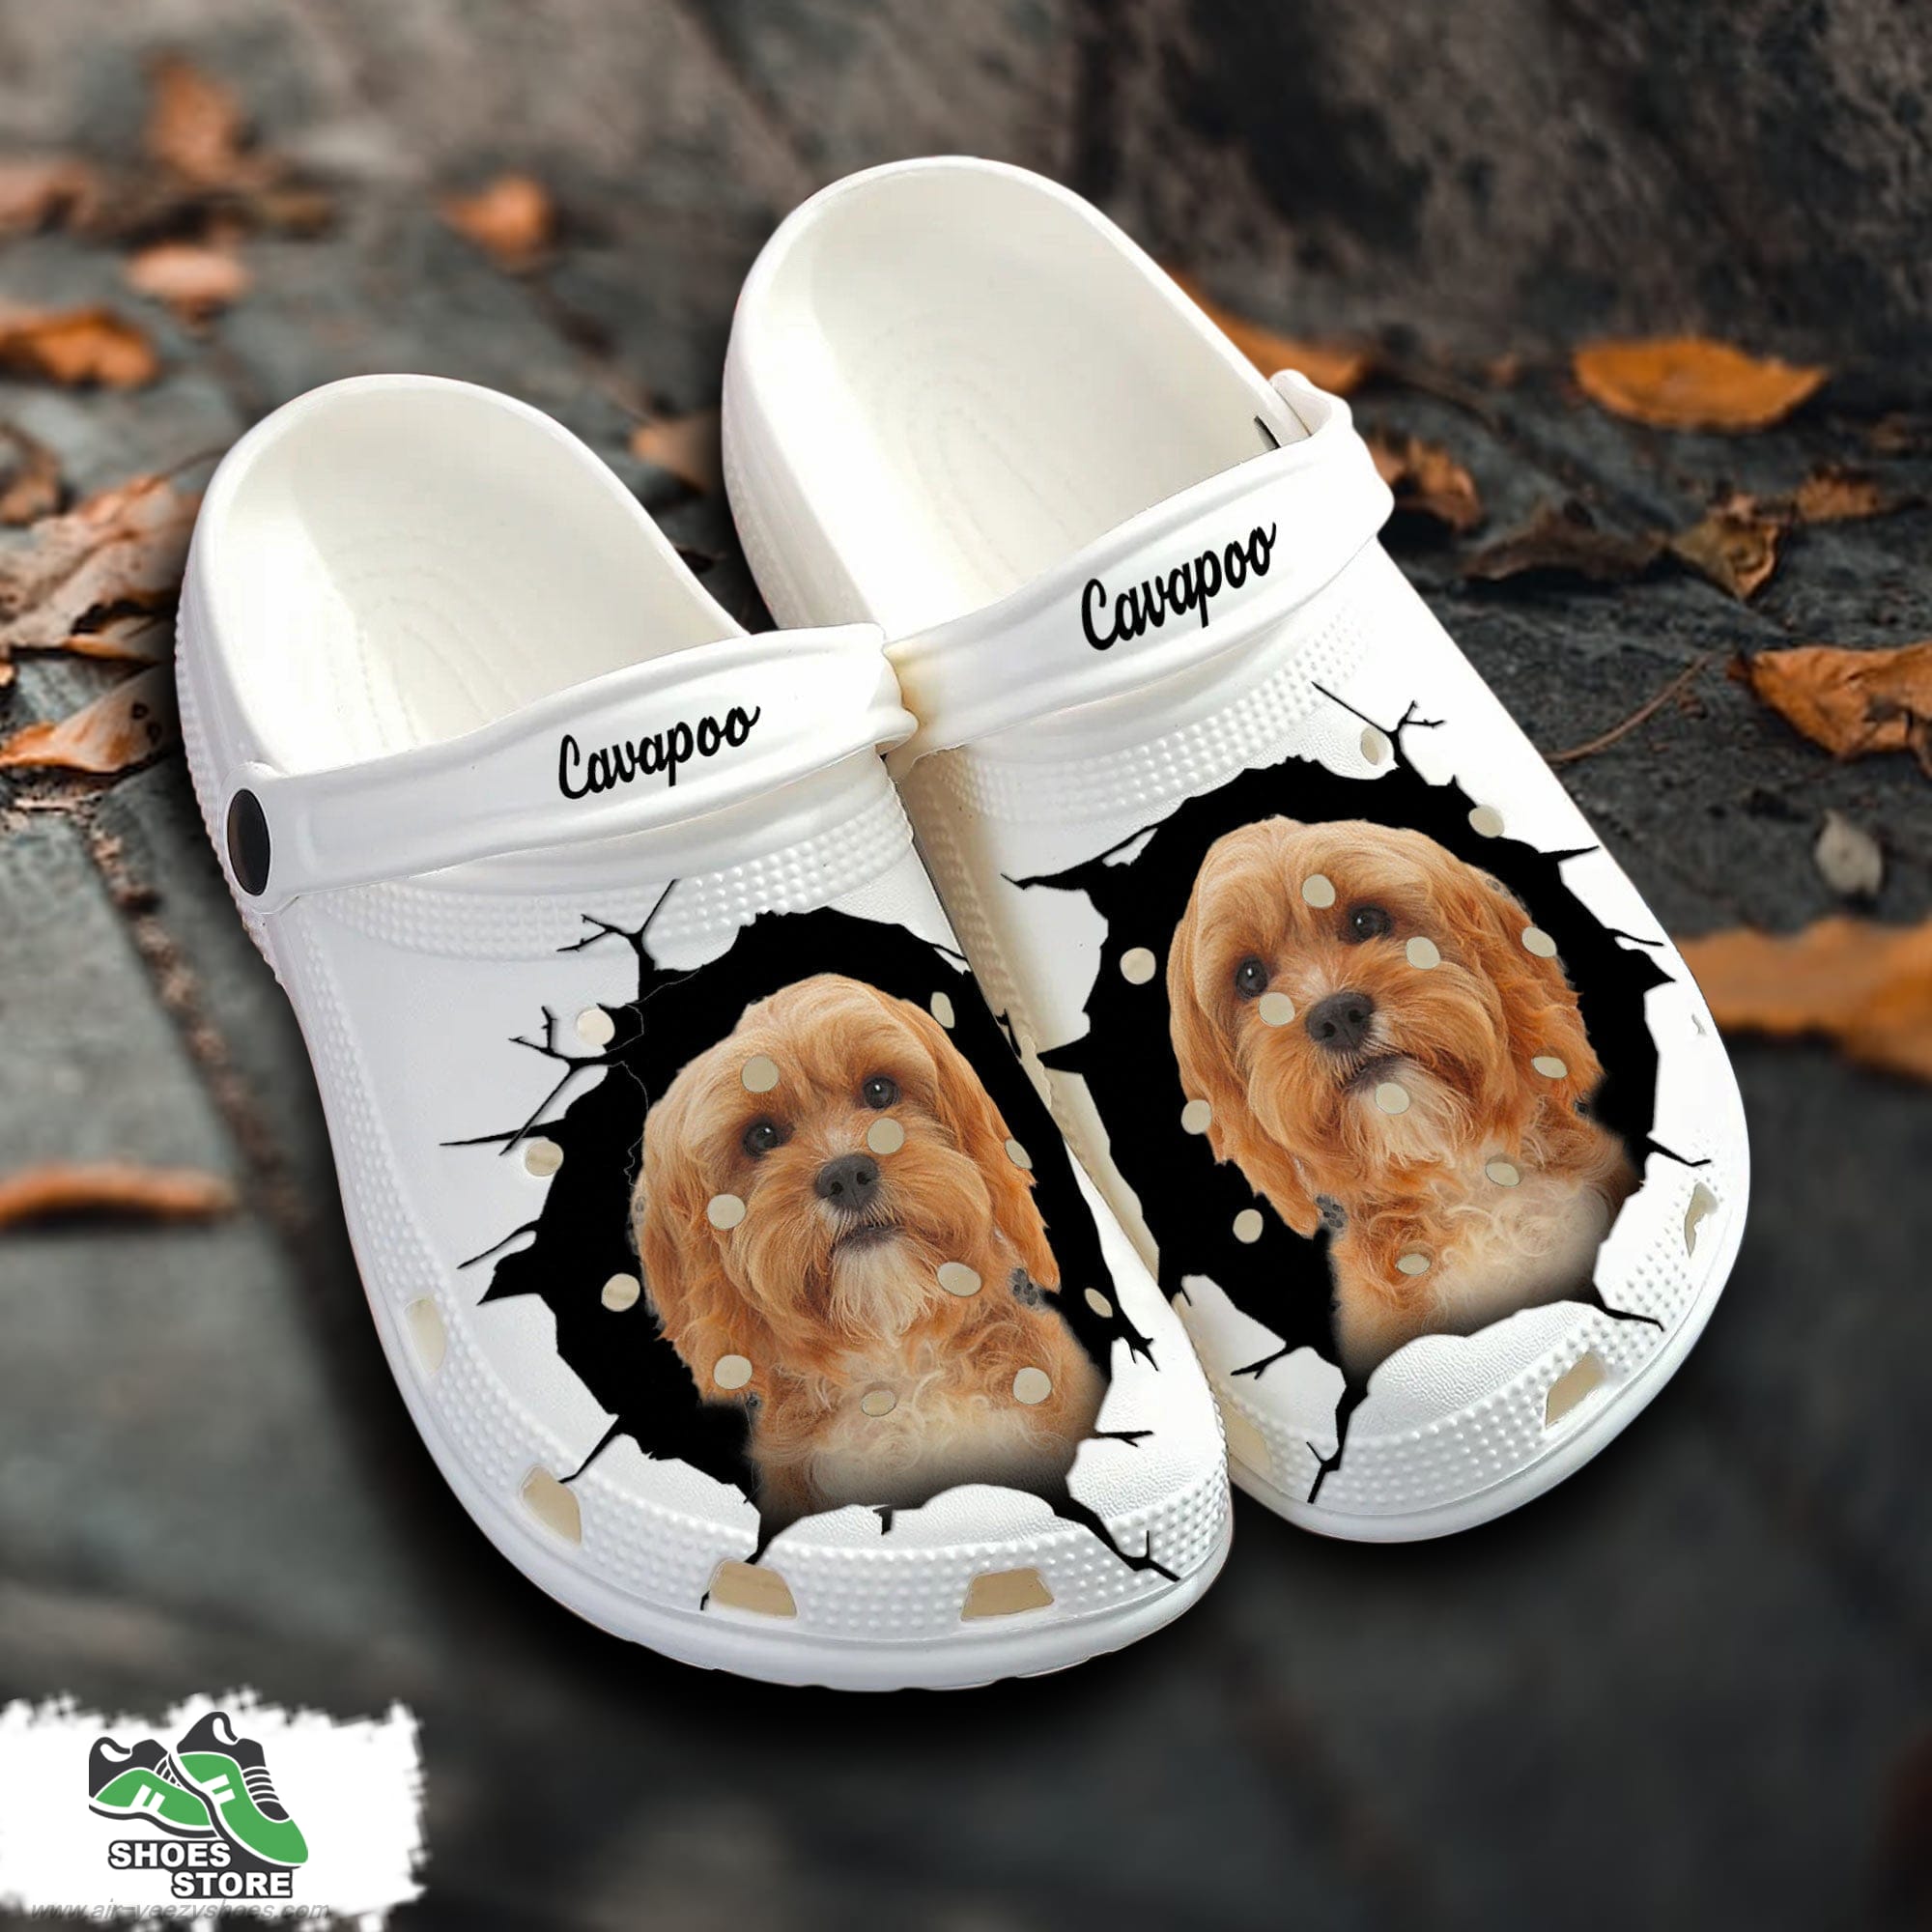 Cavapoo Custom Name Crocs Shoes Love Dog Crocs